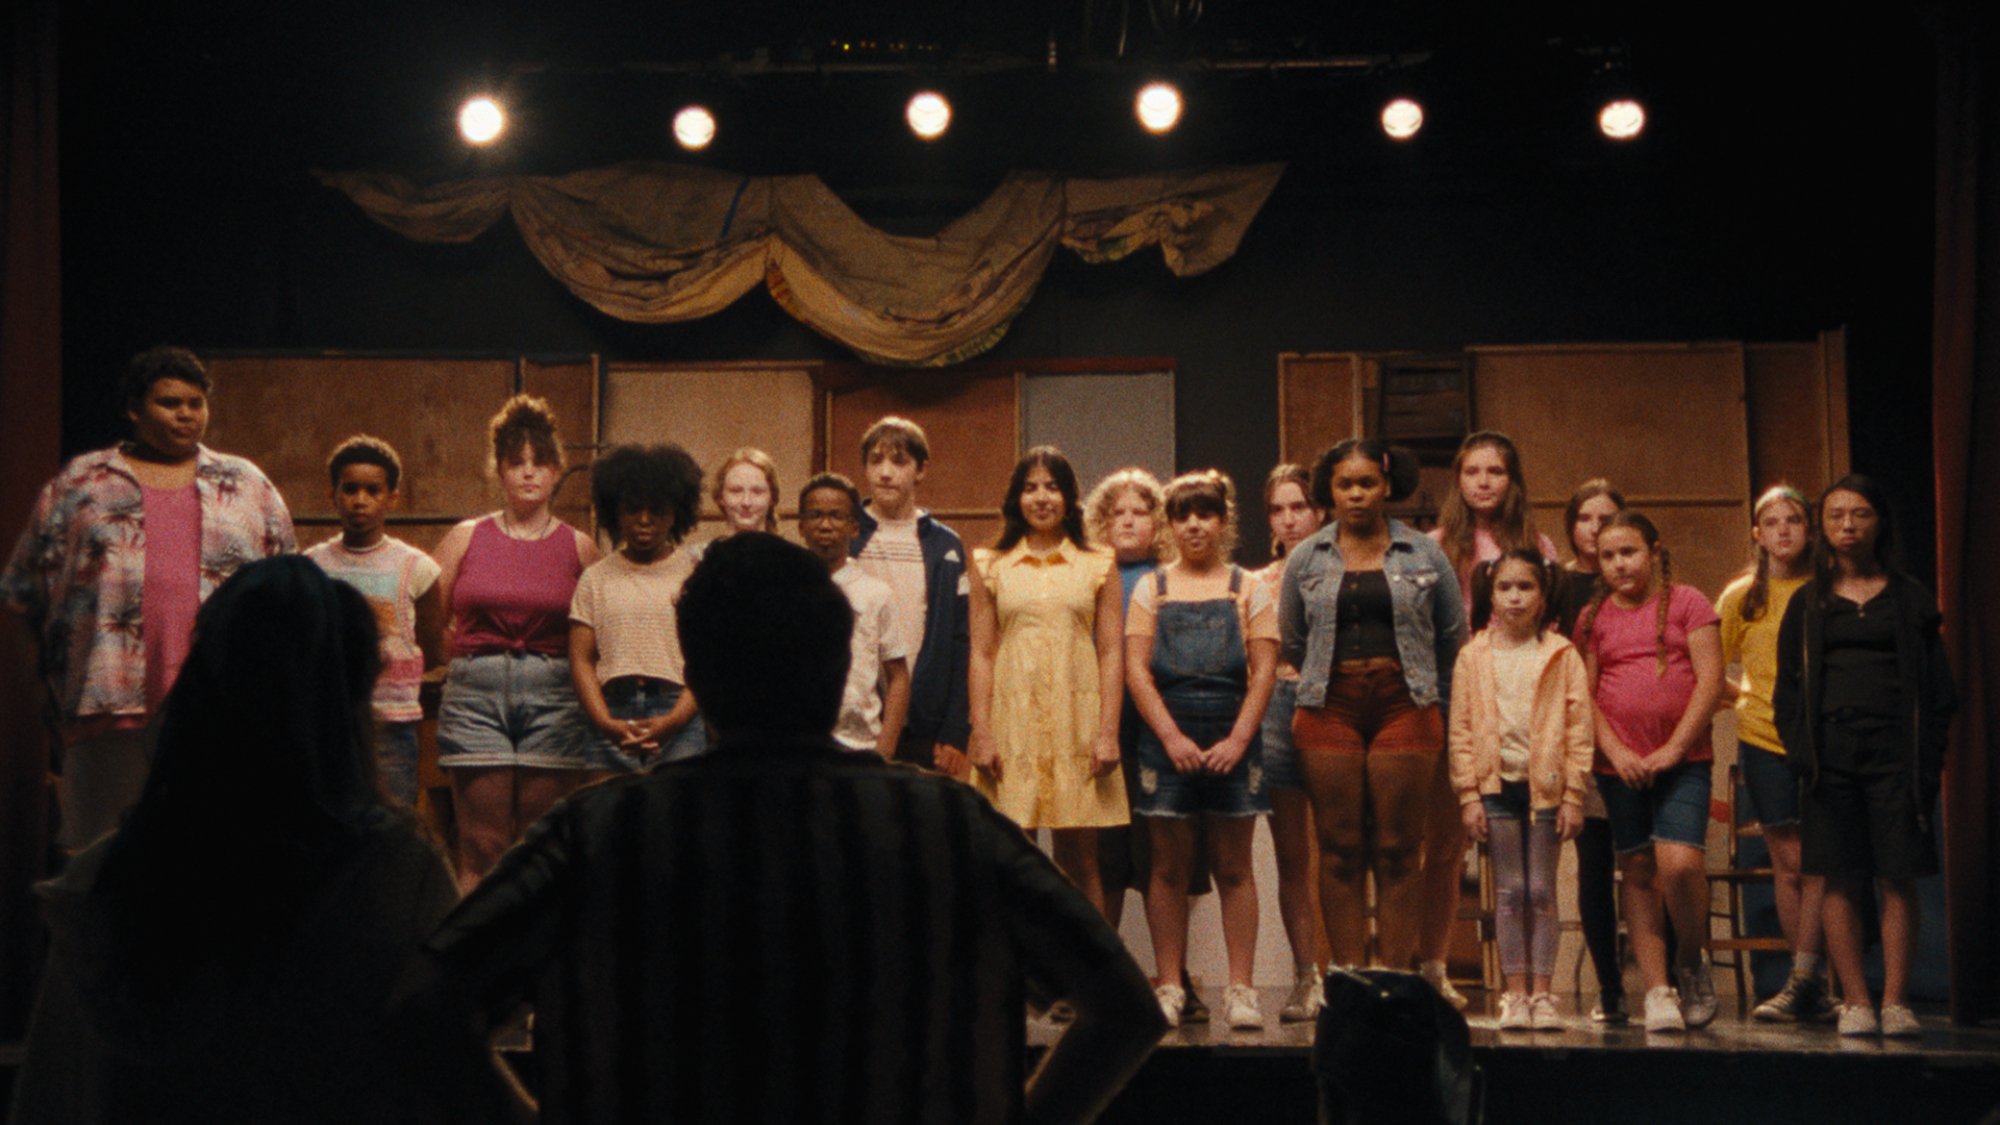 Un groupe d'enfants se tient sur scène tandis qu'un homme et une femme silhouettes regardent.